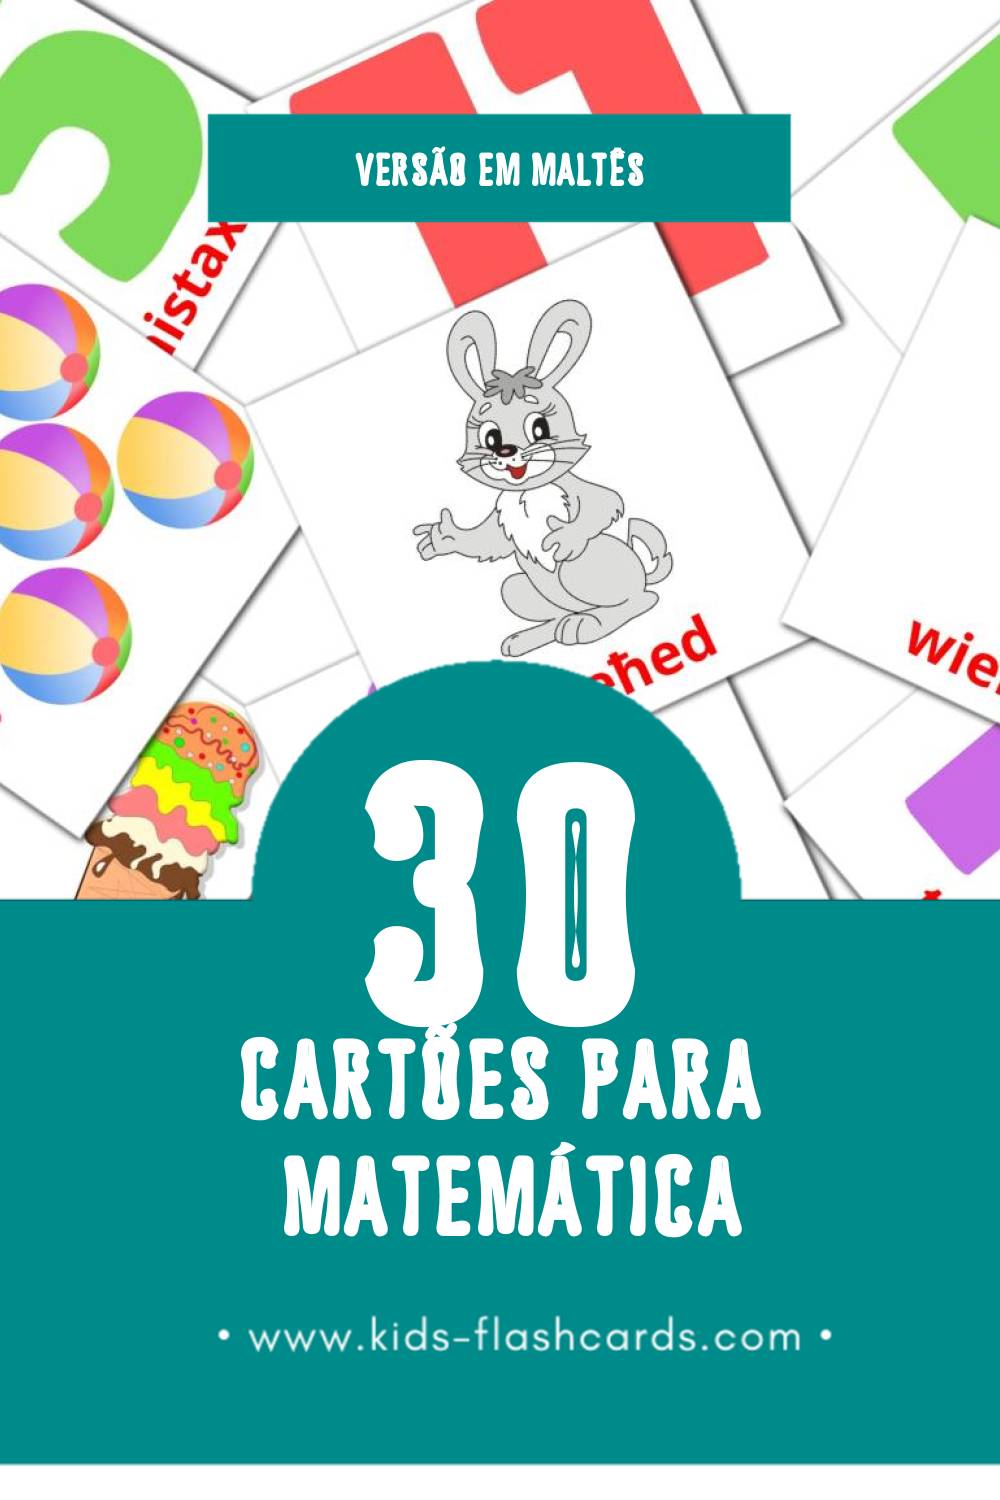 Flashcards de Matematika Visuais para Toddlers (30 cartões em Maltês)